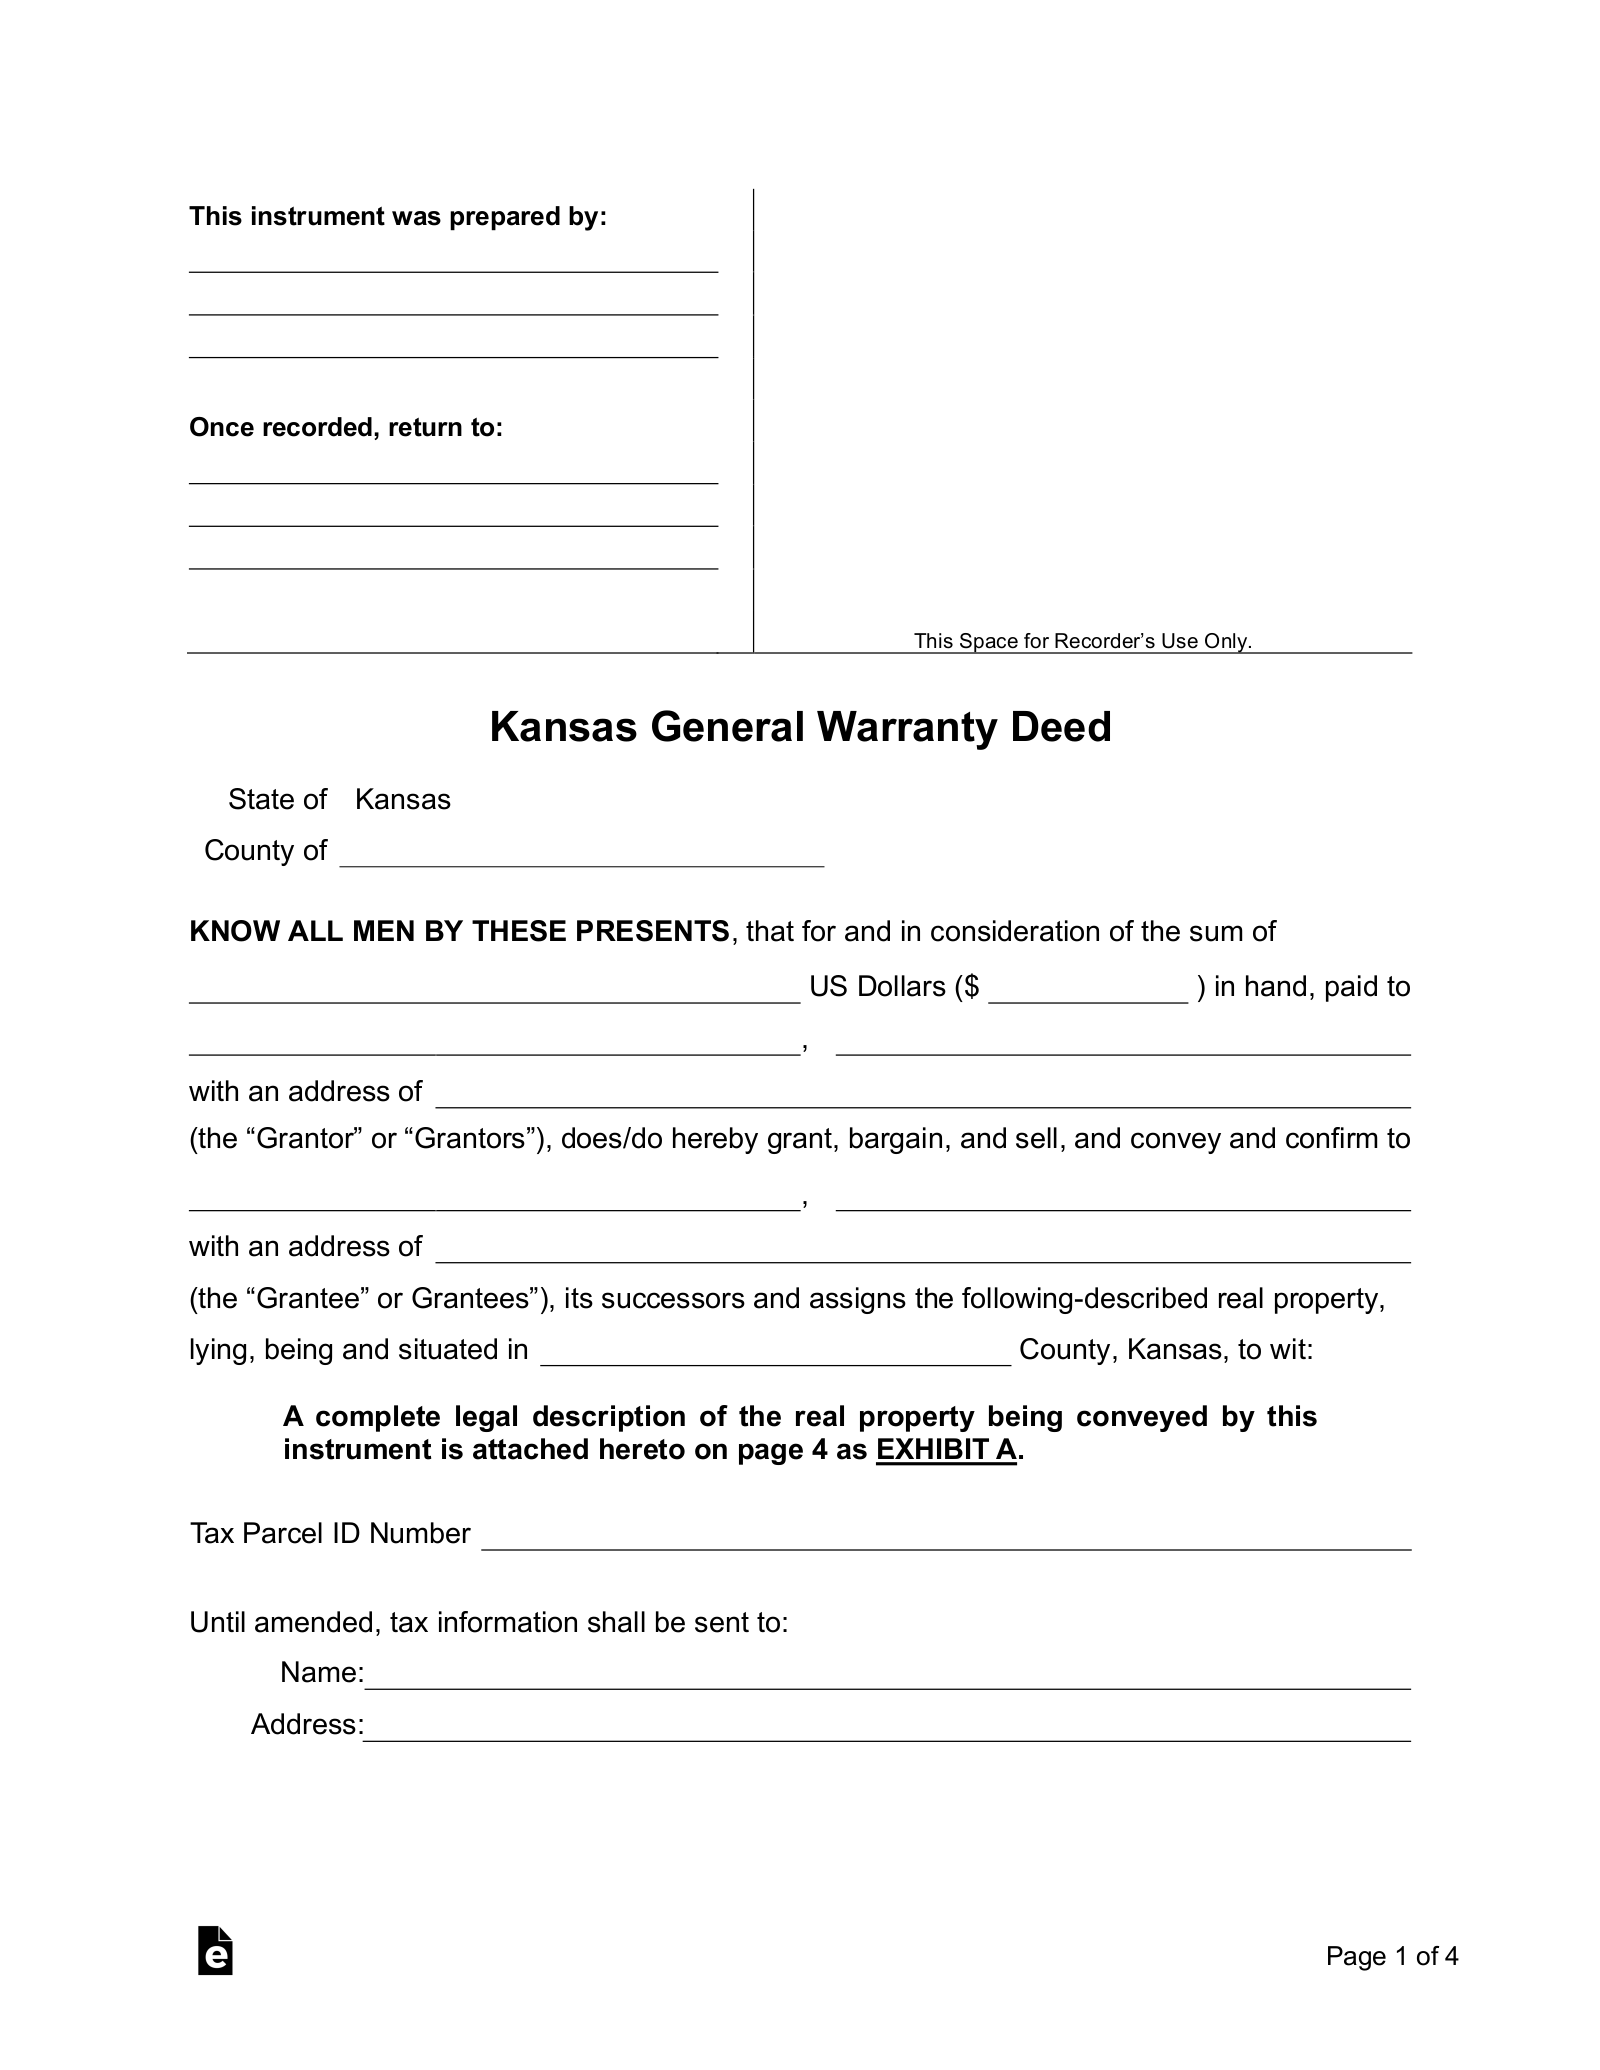 Kansas General (Statutory) Warranty Deed Form